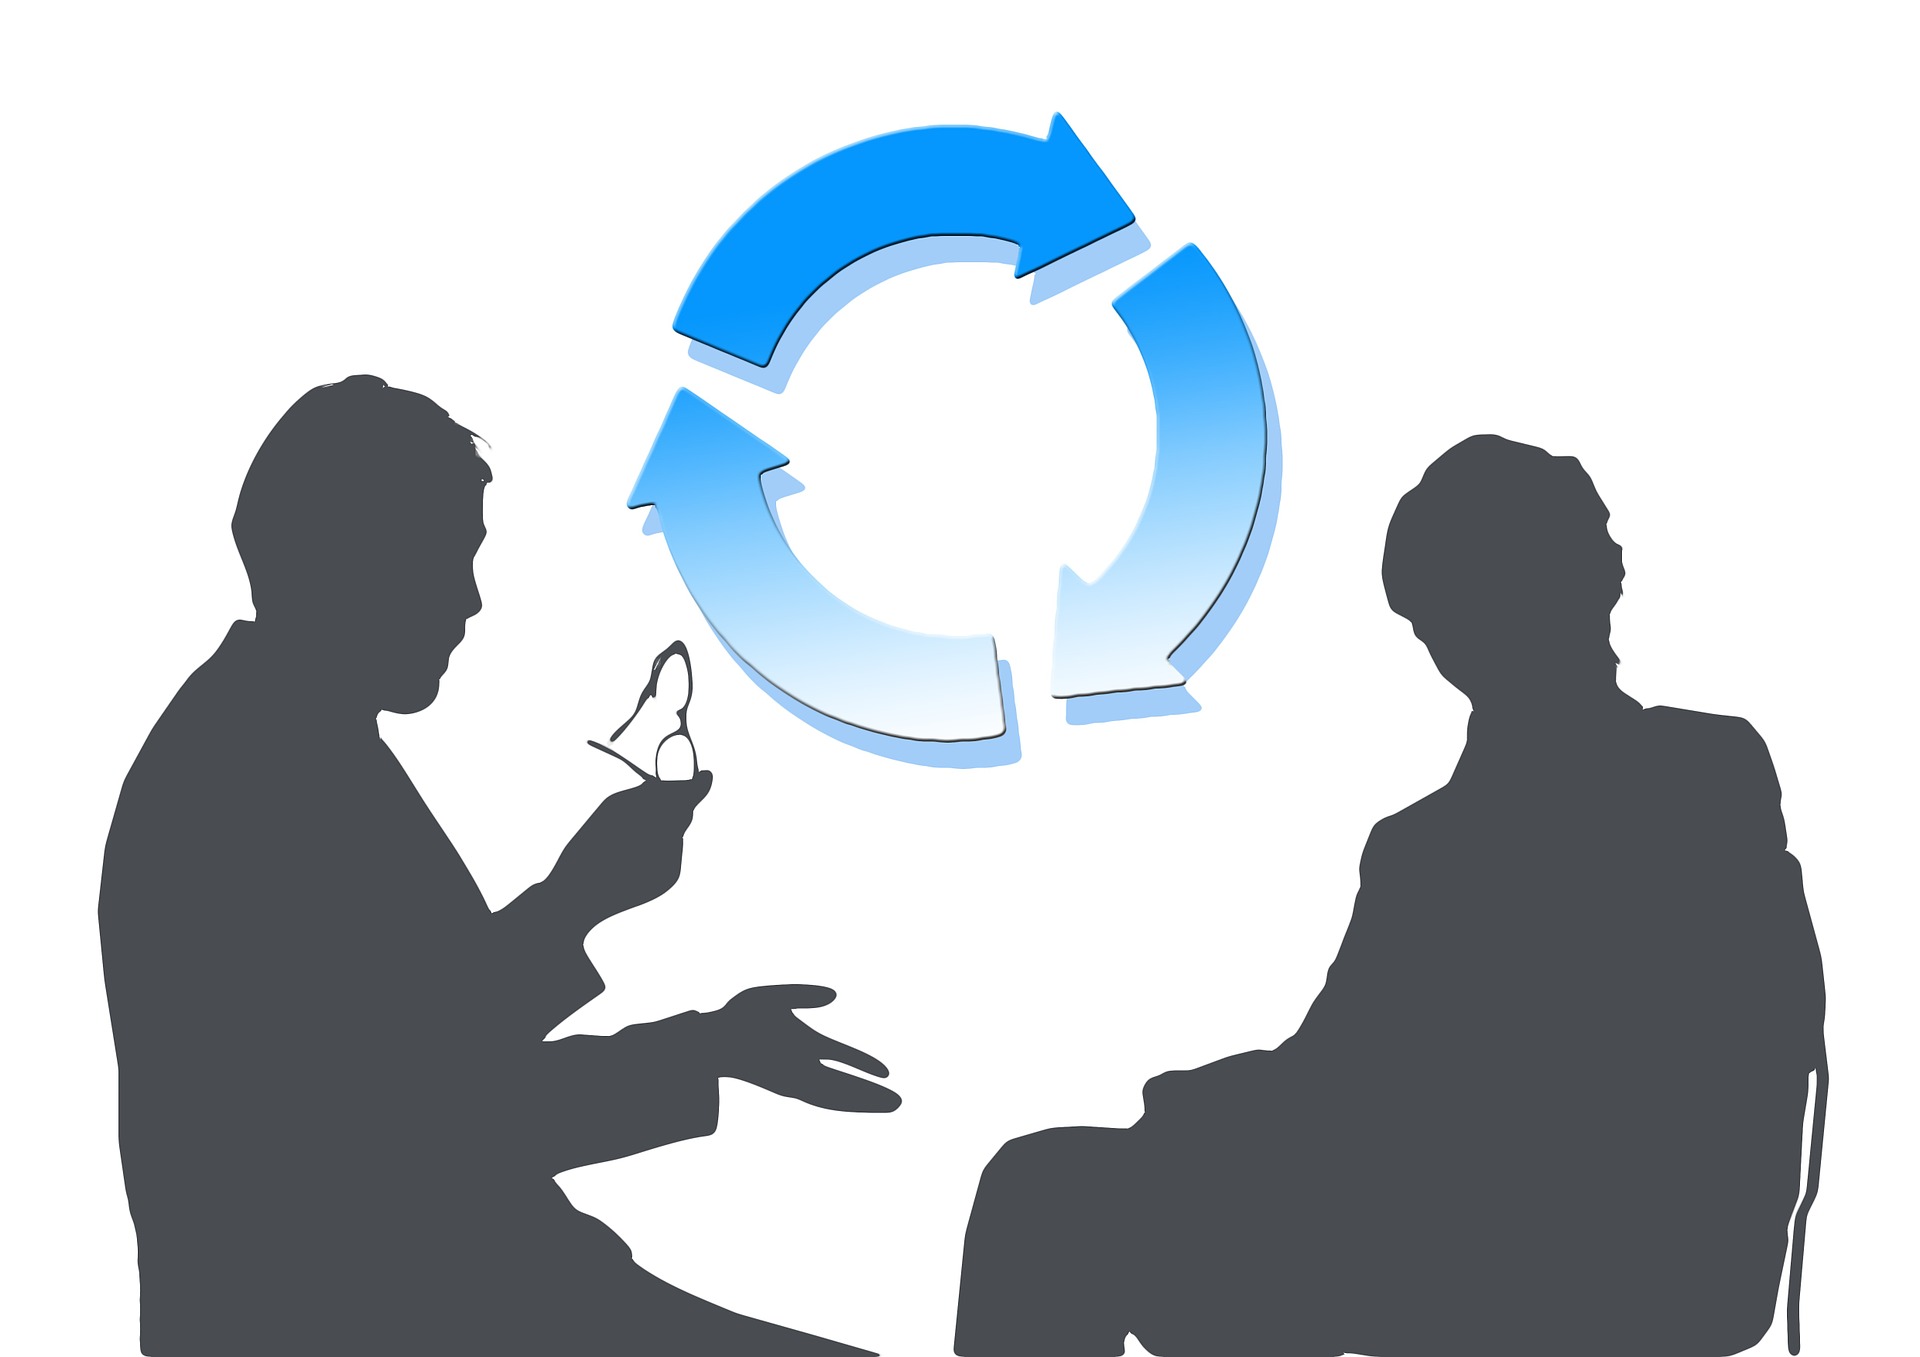 Dos personas conversando, al centro flechas que indican un proceso.